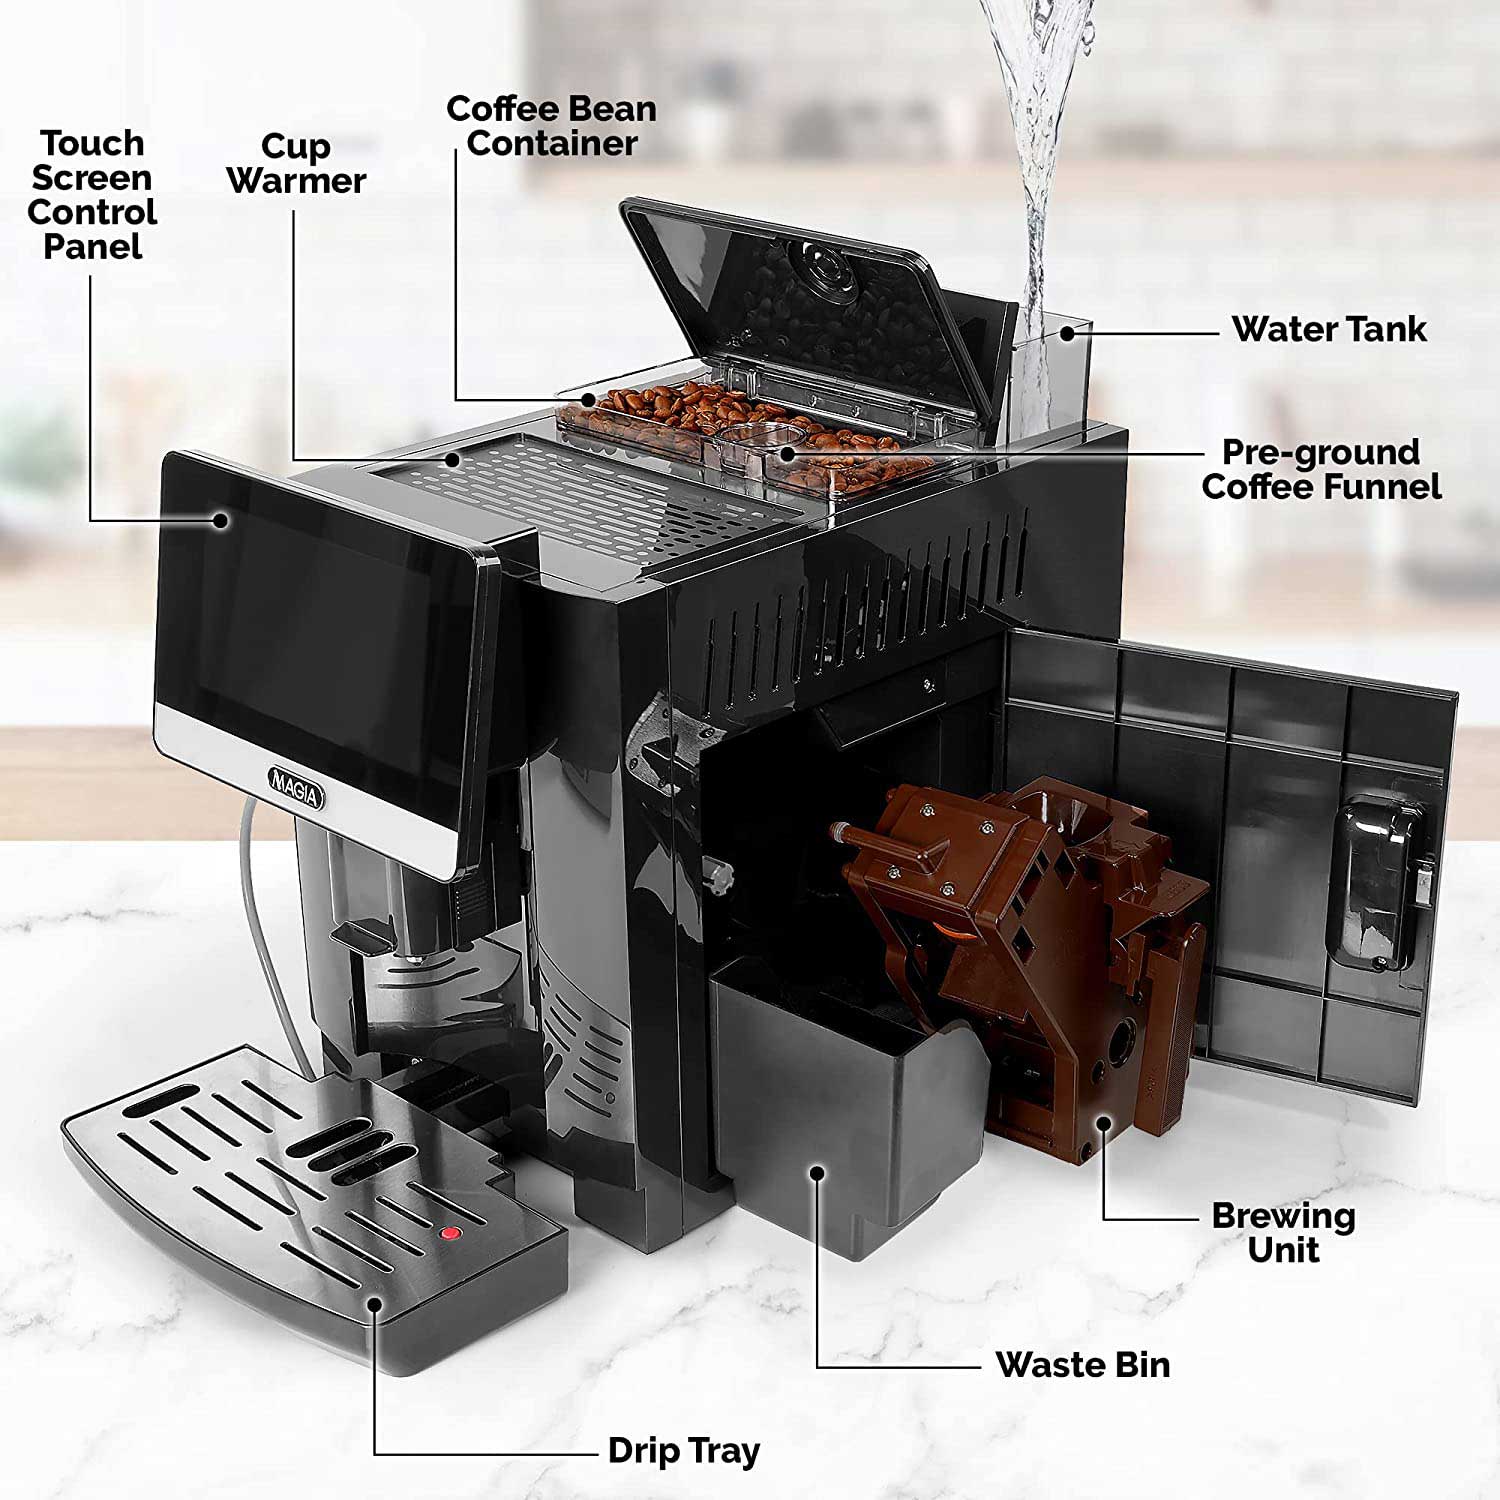 Zulay Magia Super Automatic Coffee Espresso Machine - Zulay KitchenCoffee MachineZulay Kitchen